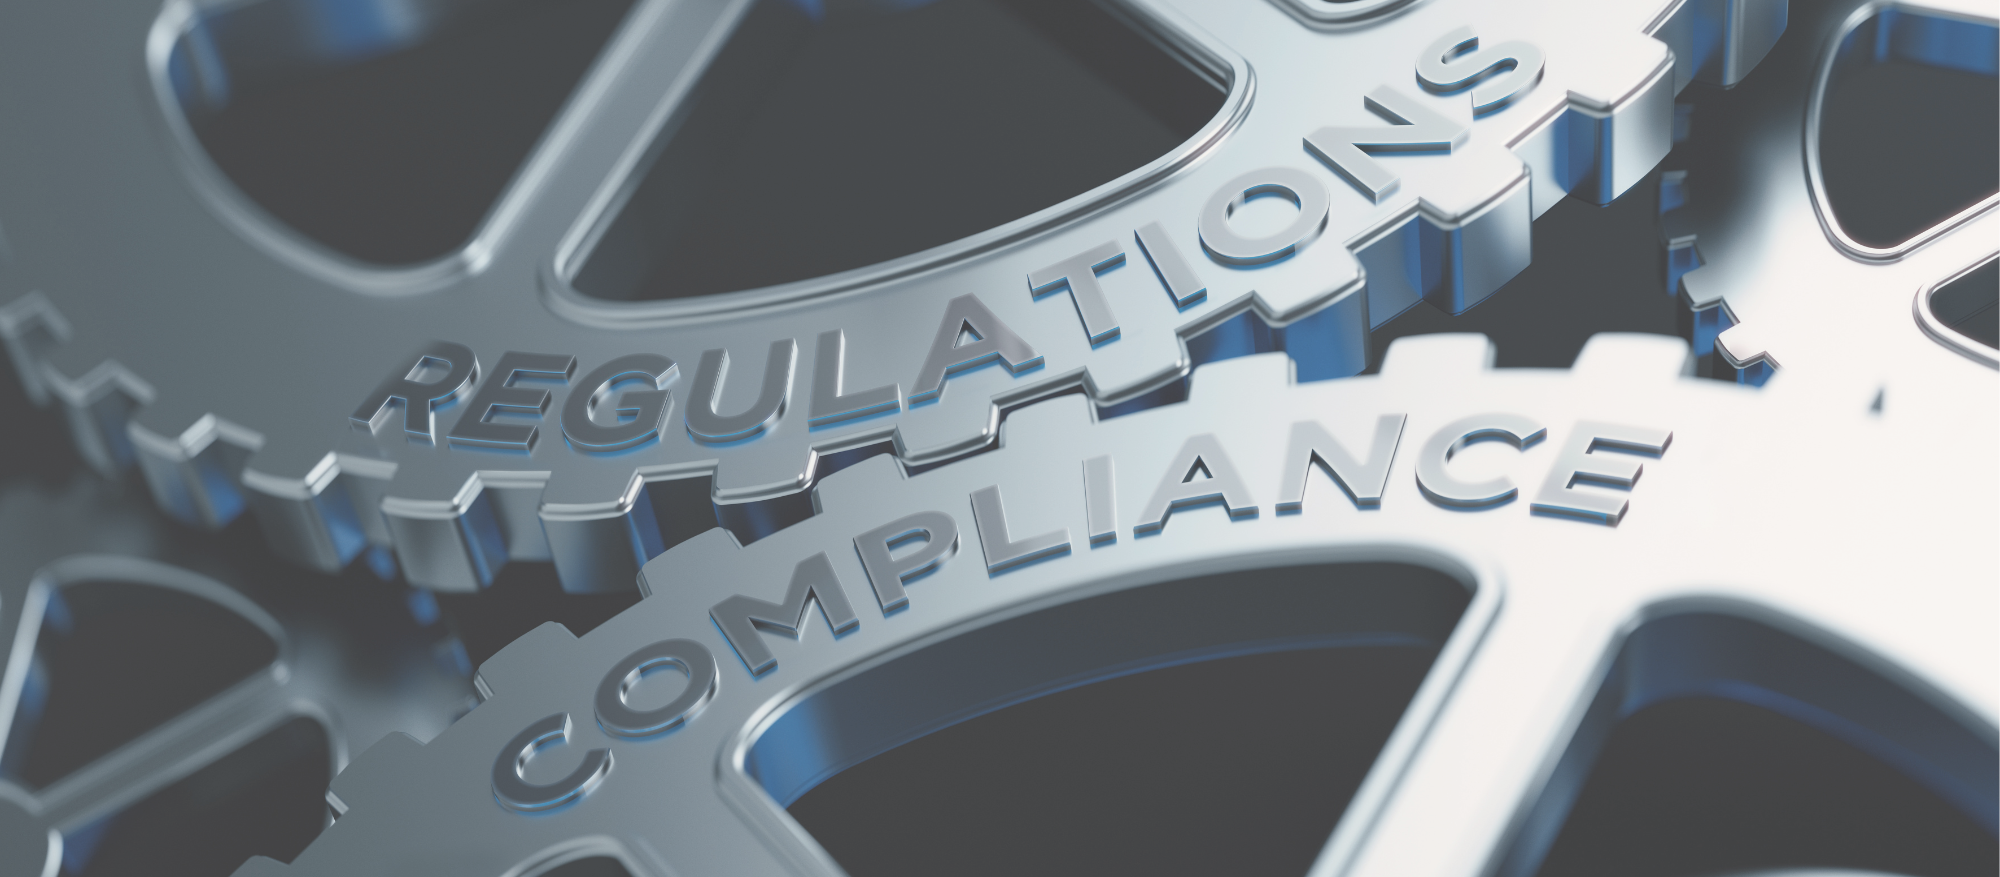 SFDR, regulation, finance, compliance